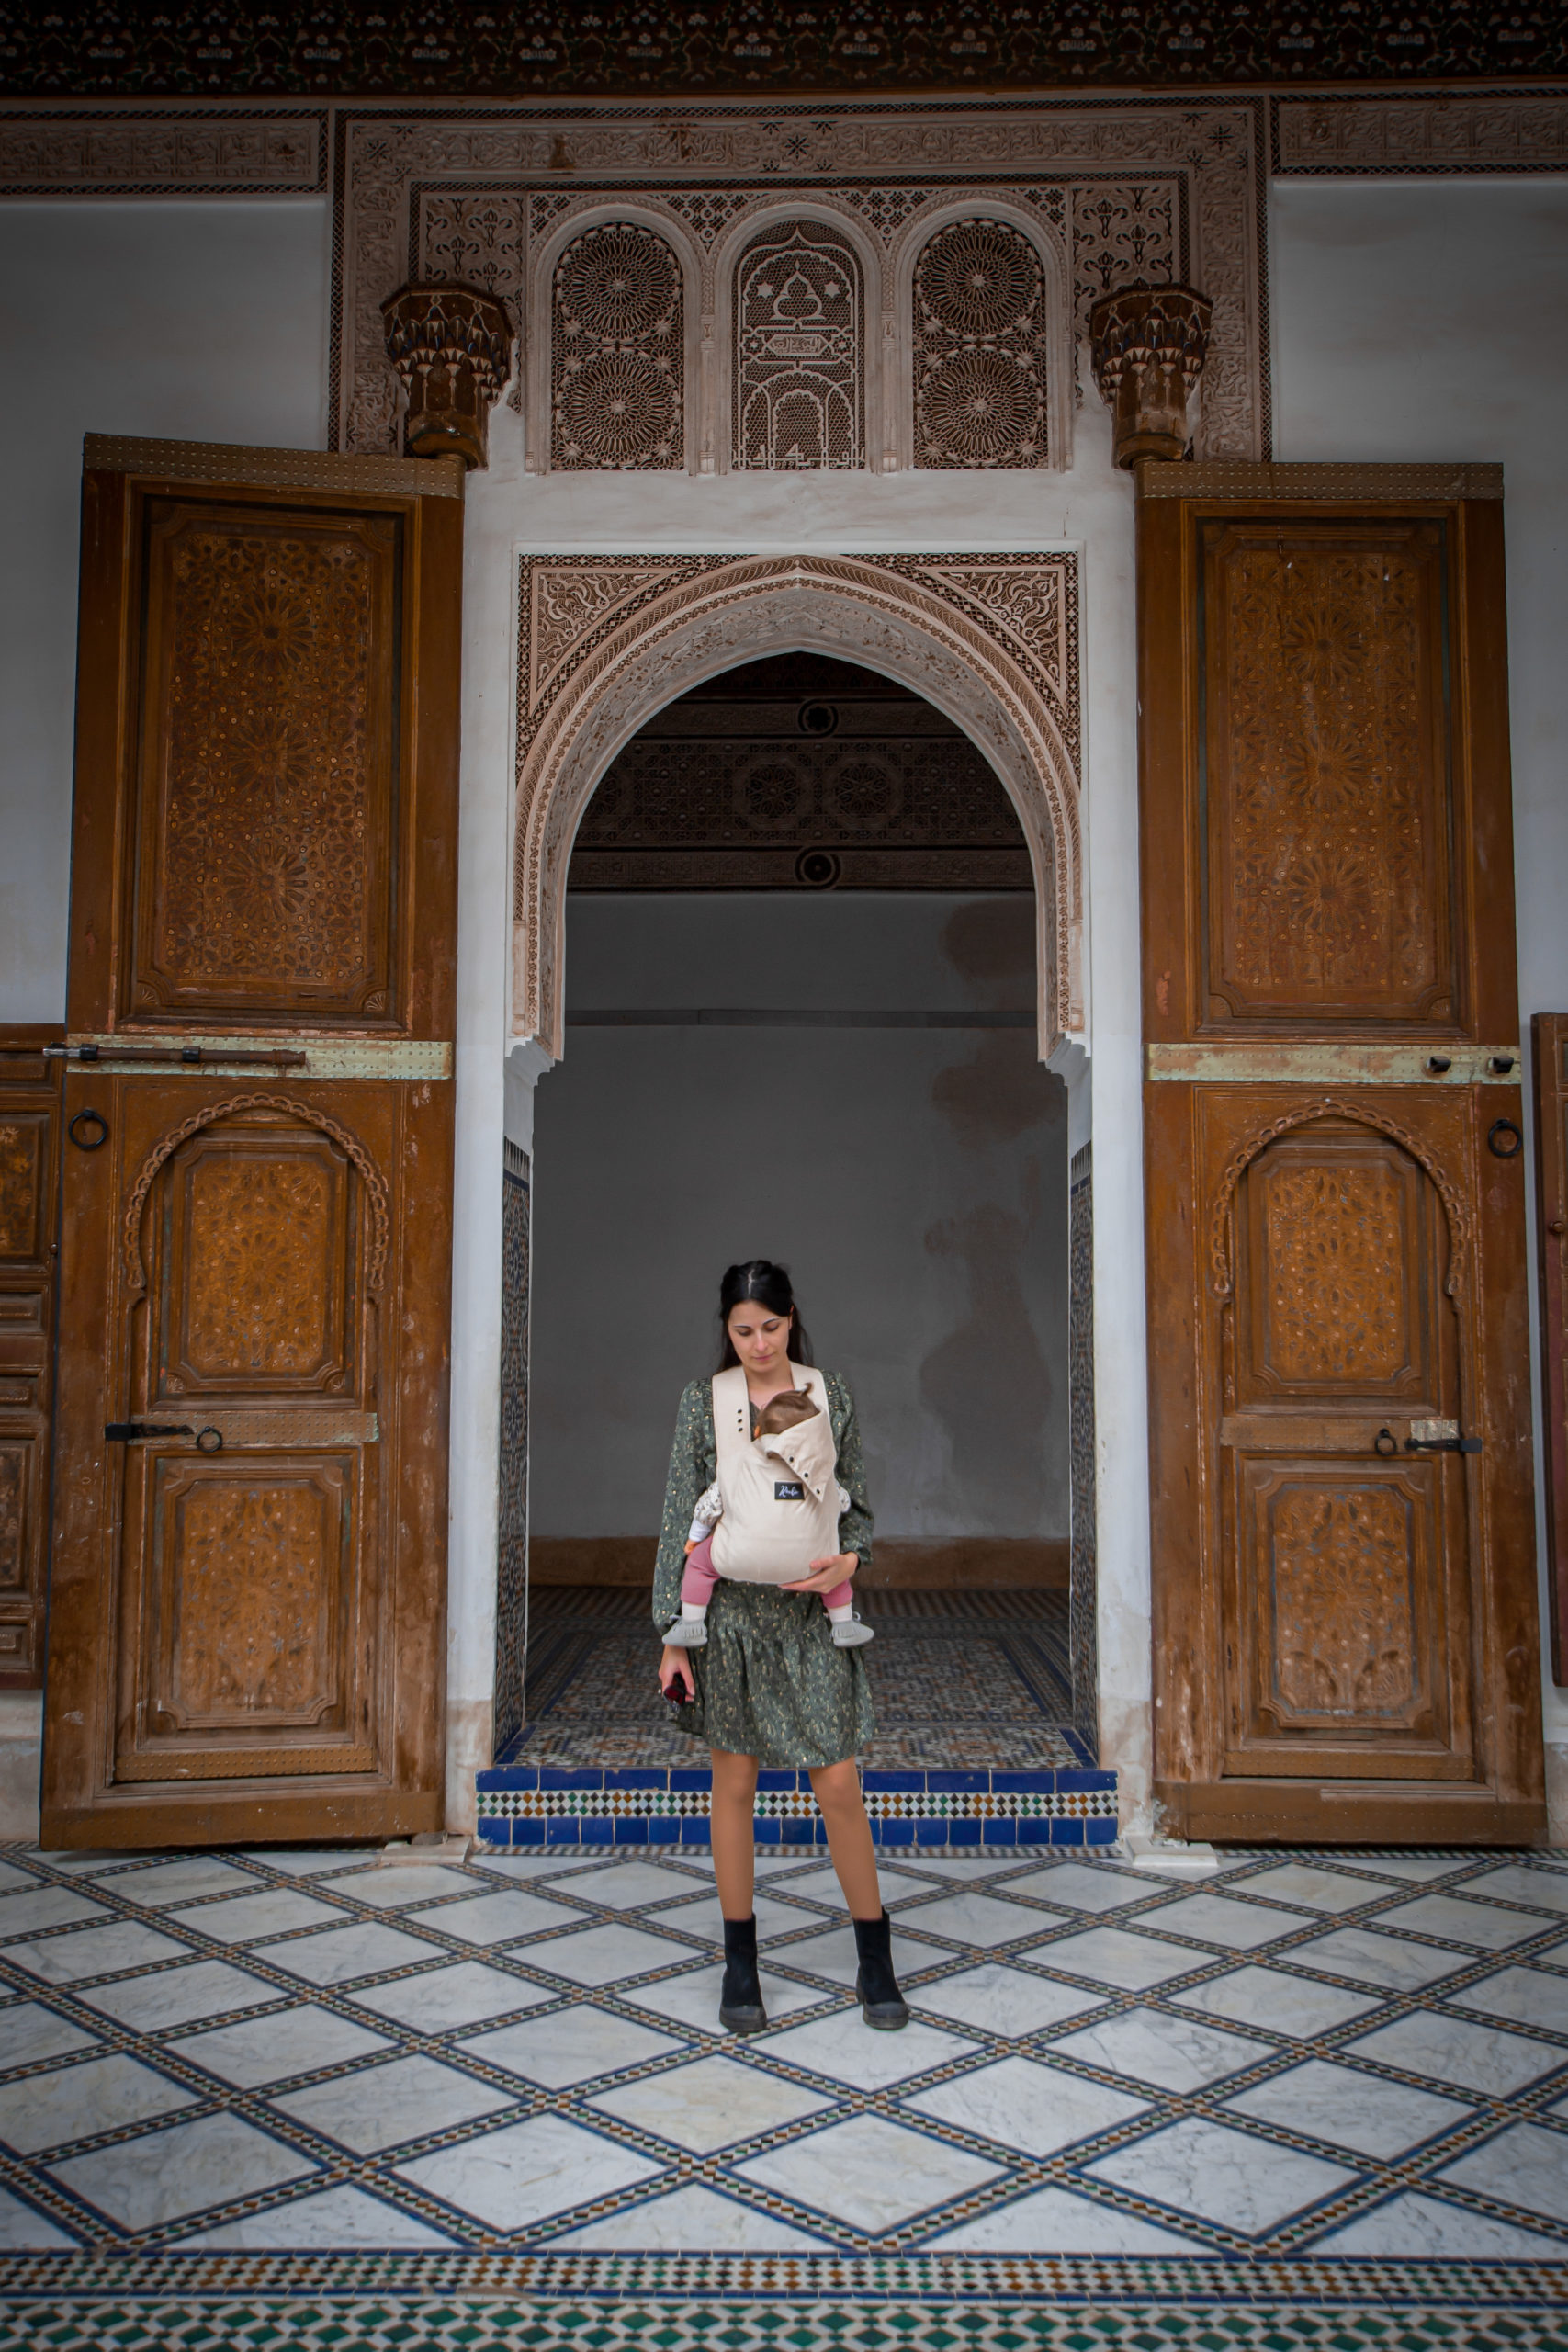 Visiter Marrakech, les incontournables